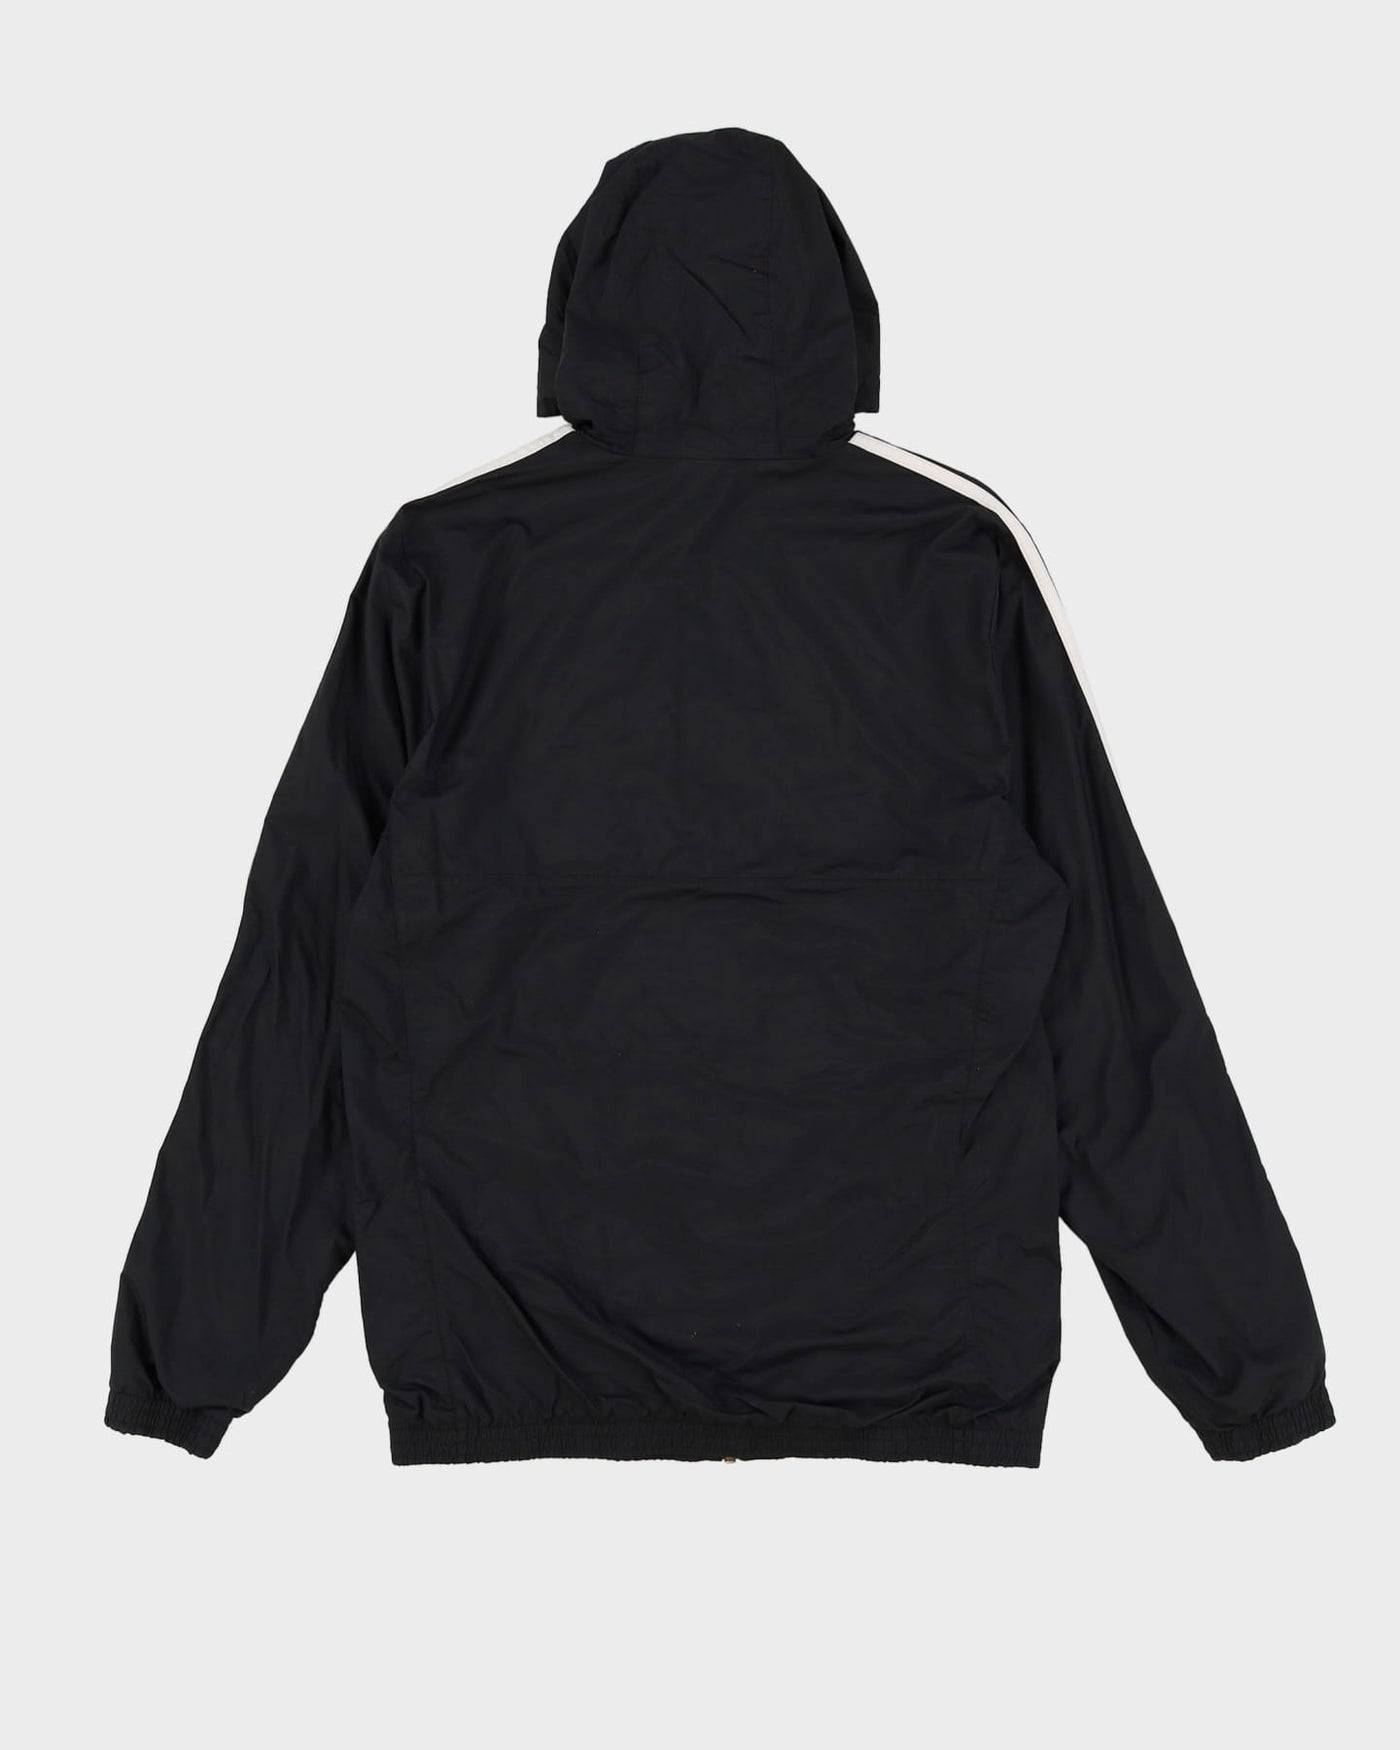 Adidas Black Hooded Zip Up Windbreaker Jacket - M